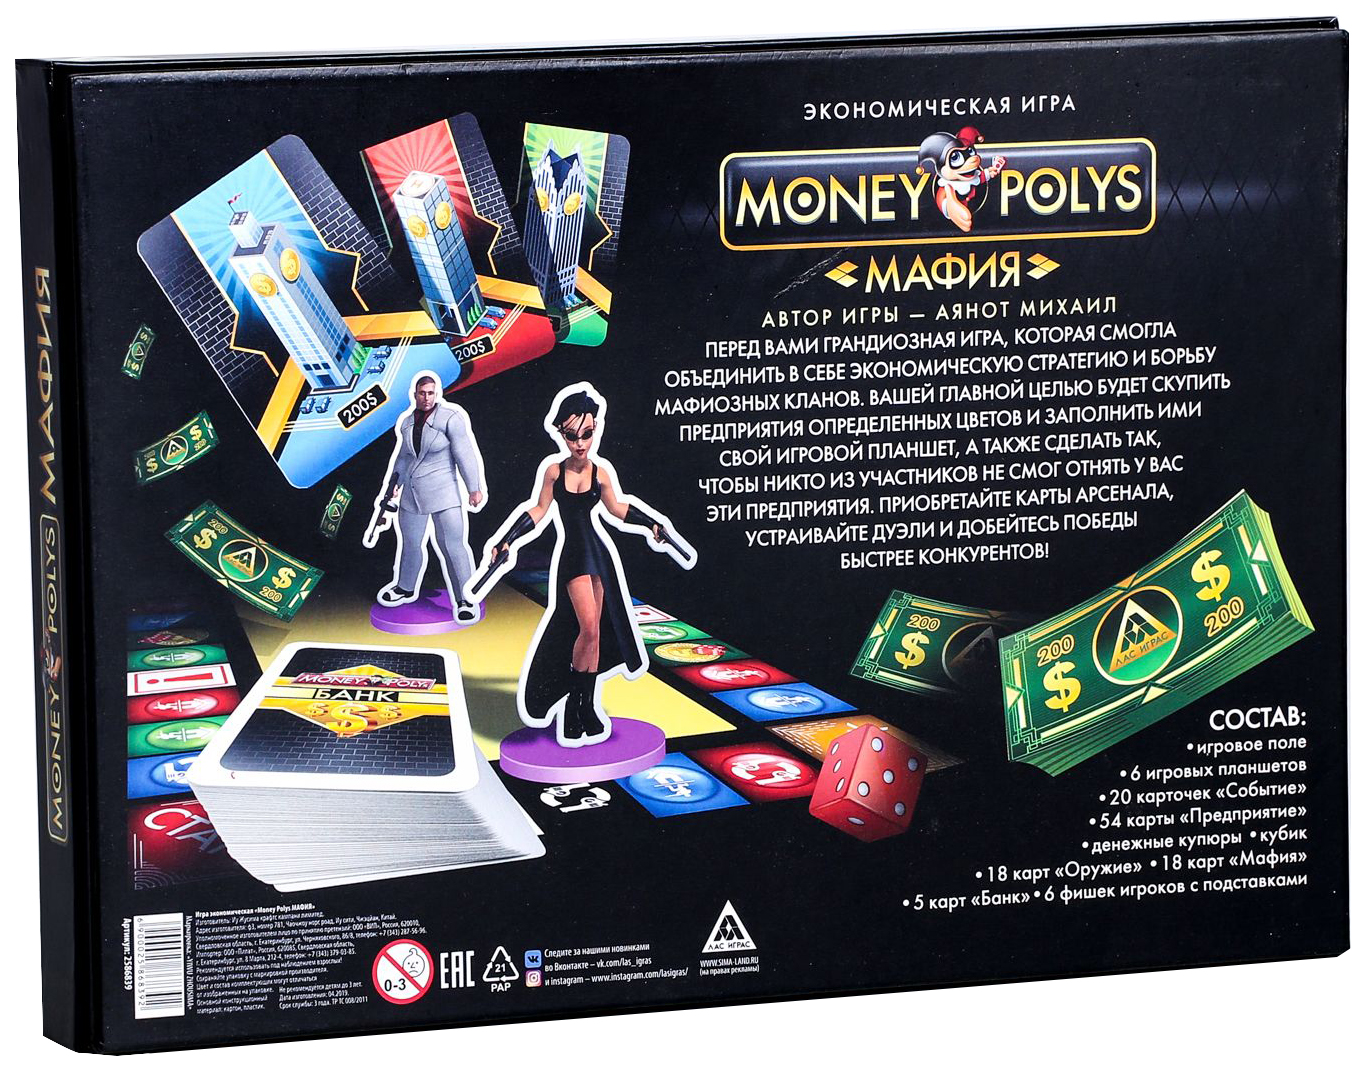 Game money отзывы. Экономическая игра «money Polys. Мои первые покупки», 4+. Монополия мафия. Настольная игра money Polys. Настольная экономическая игра «money Polys», 8+.